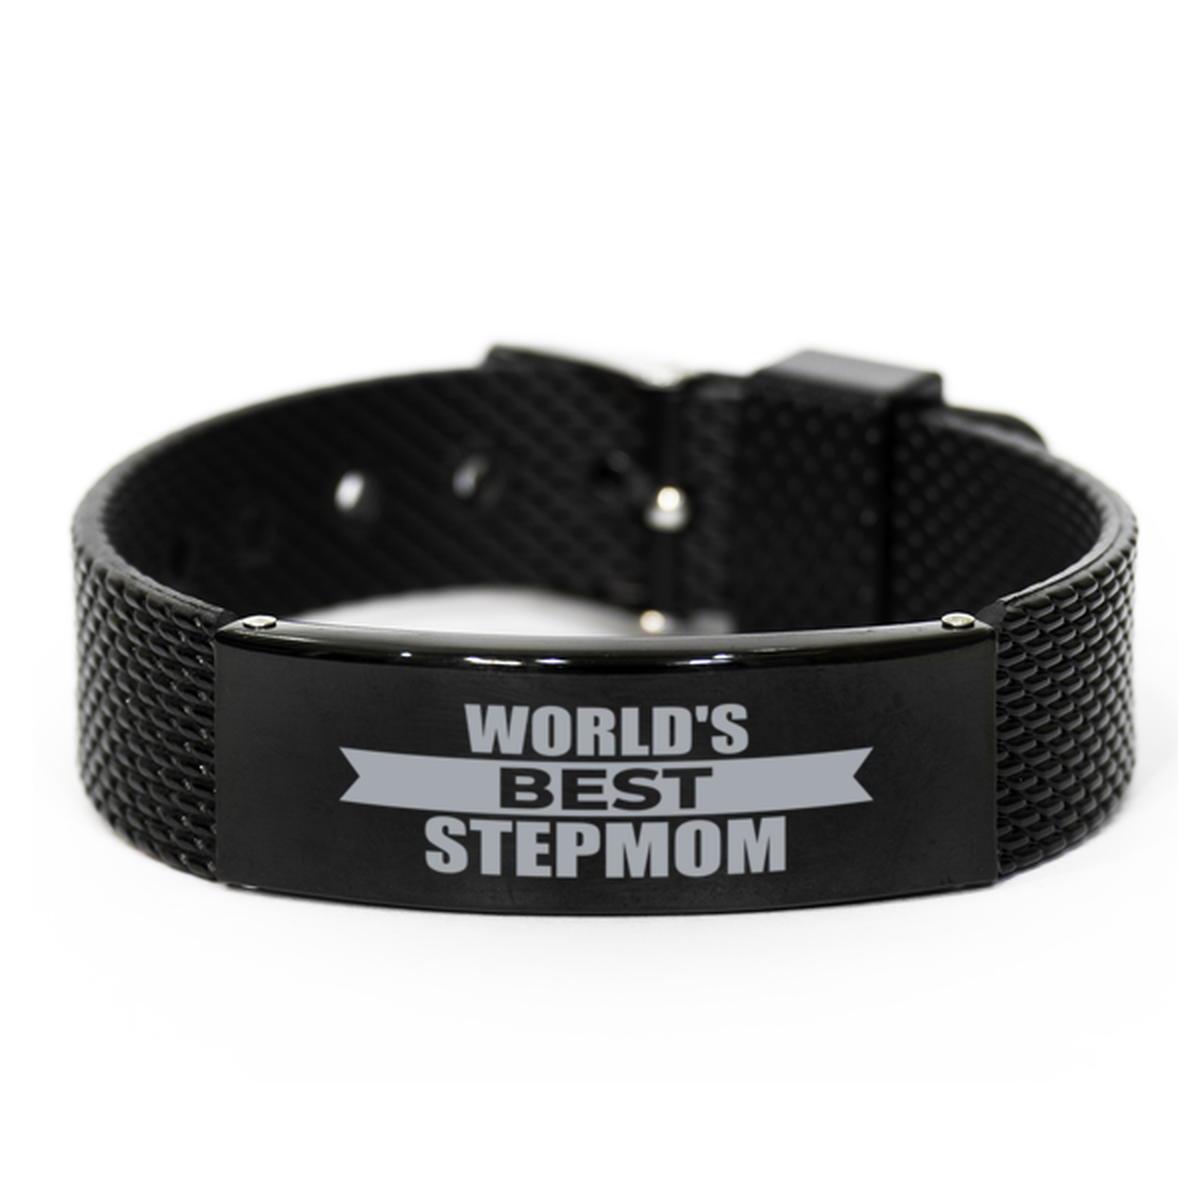 World's Best Stepmom Gifts, Gag Engraved Bracelet For Stepmom, Best Family Gifts For Women